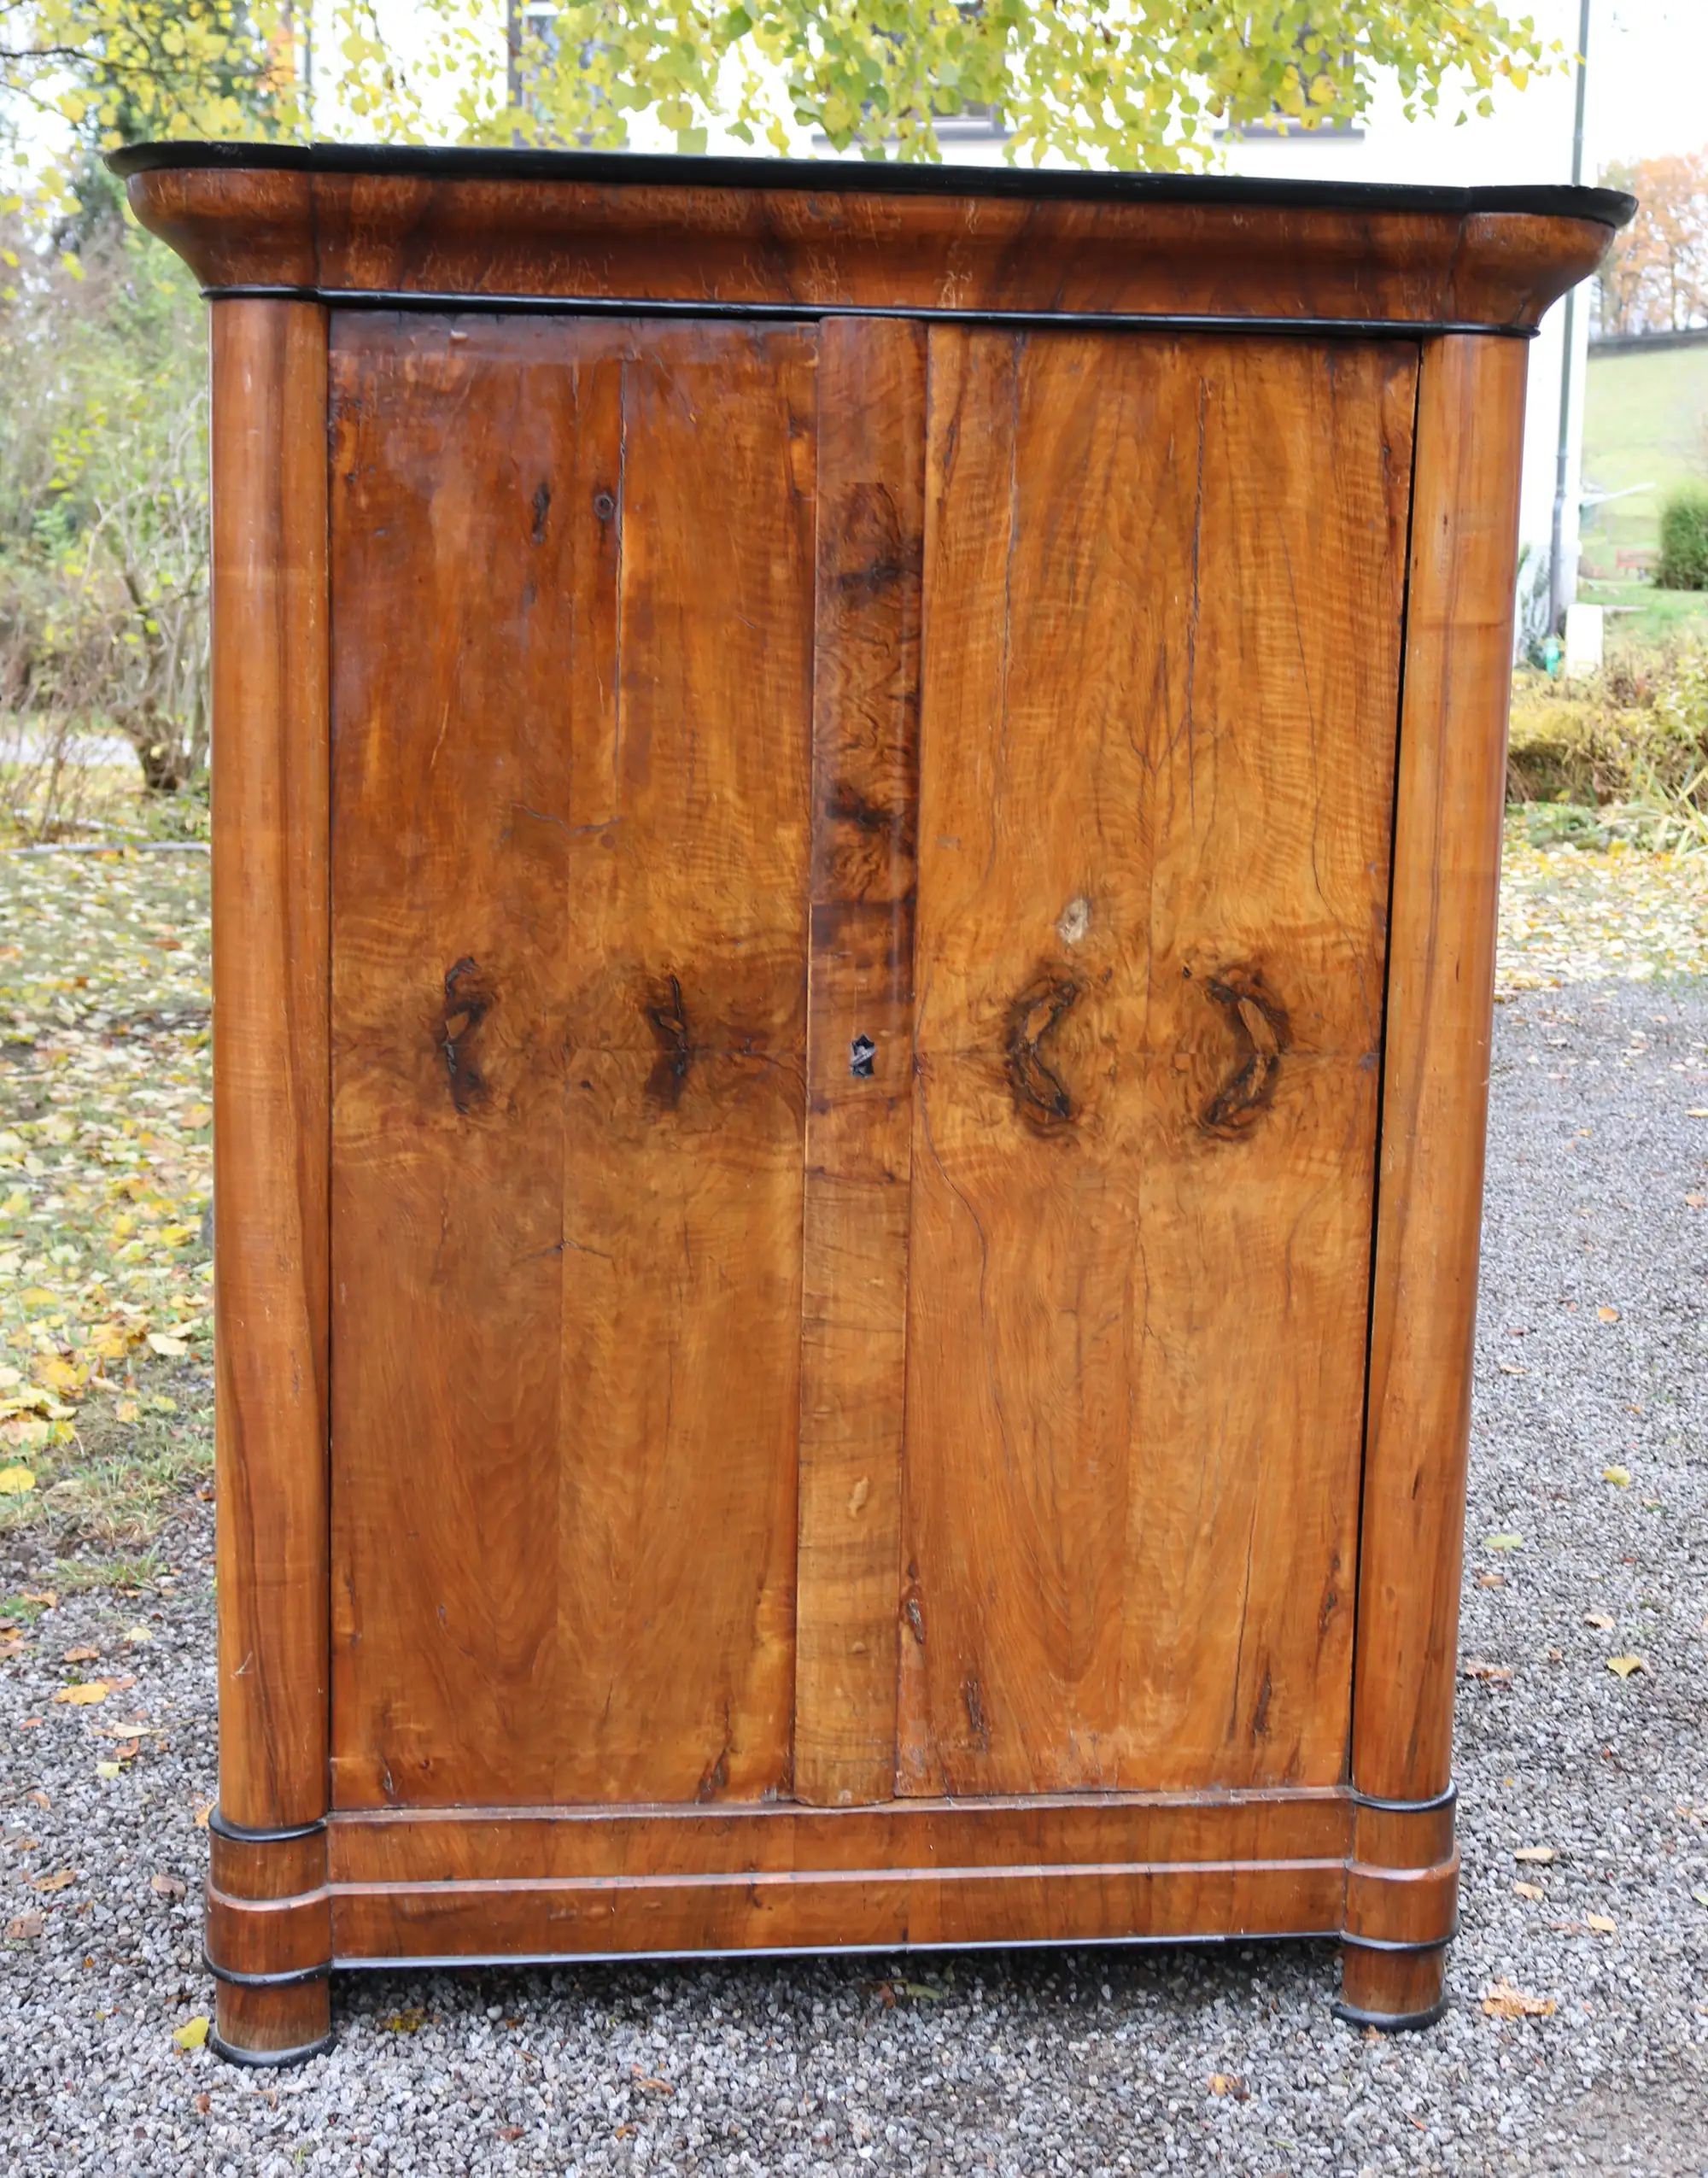 Biedermeierschrank aus Nussbaum von 1825, unrestauriert